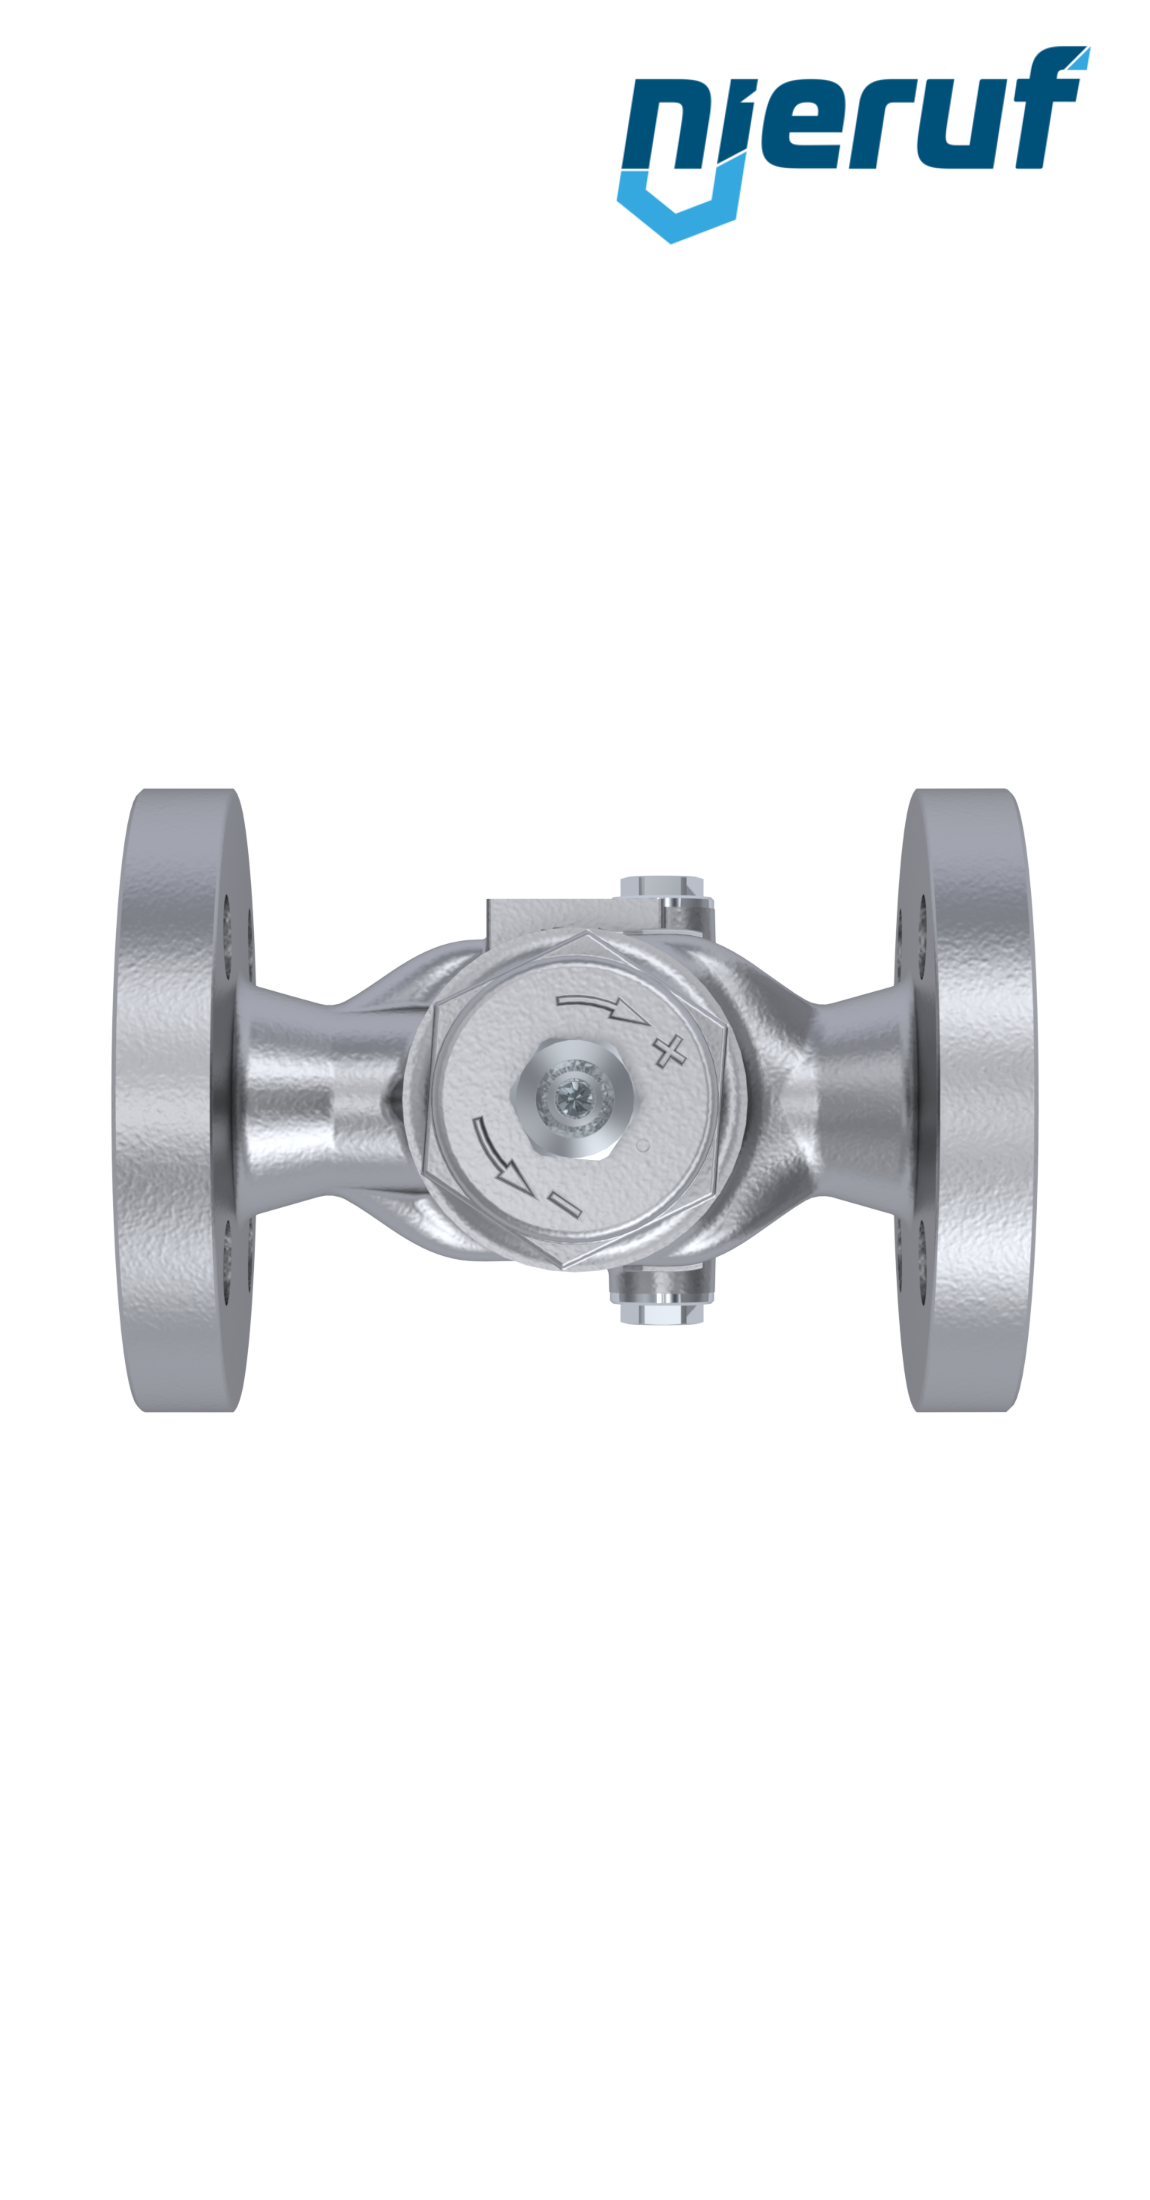 pressure reducing valve DN 25 DM13 stainless steel FPM / FKM 1.5 - 6.0 bar